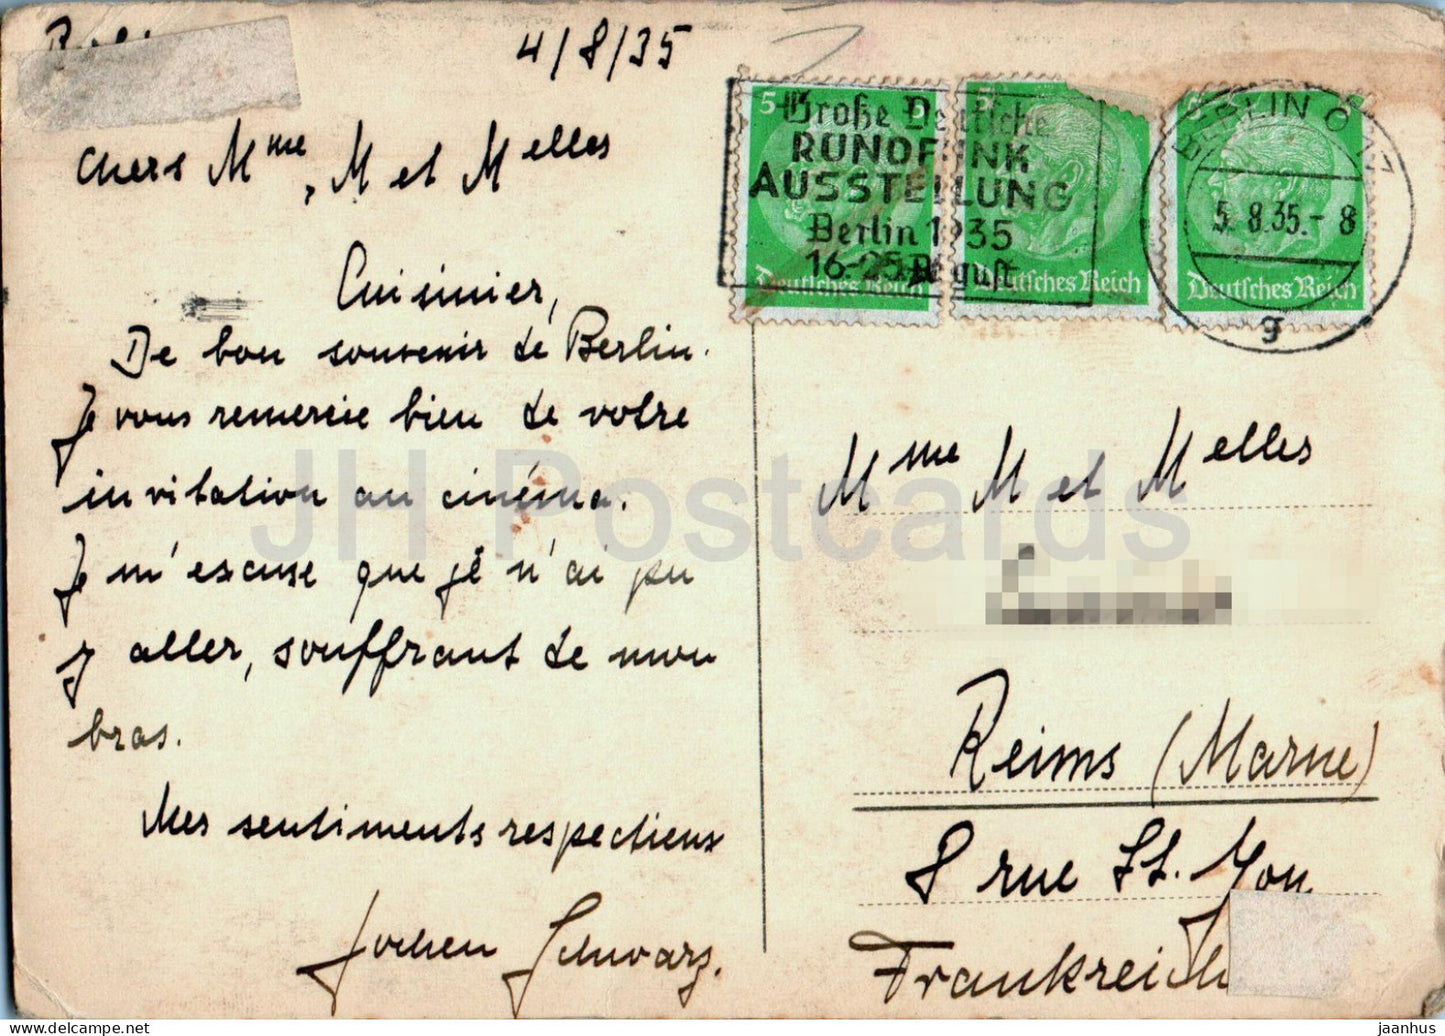 Berlin - Rathaus - alte Postkarte - 1935 - Deutschland - gebraucht 